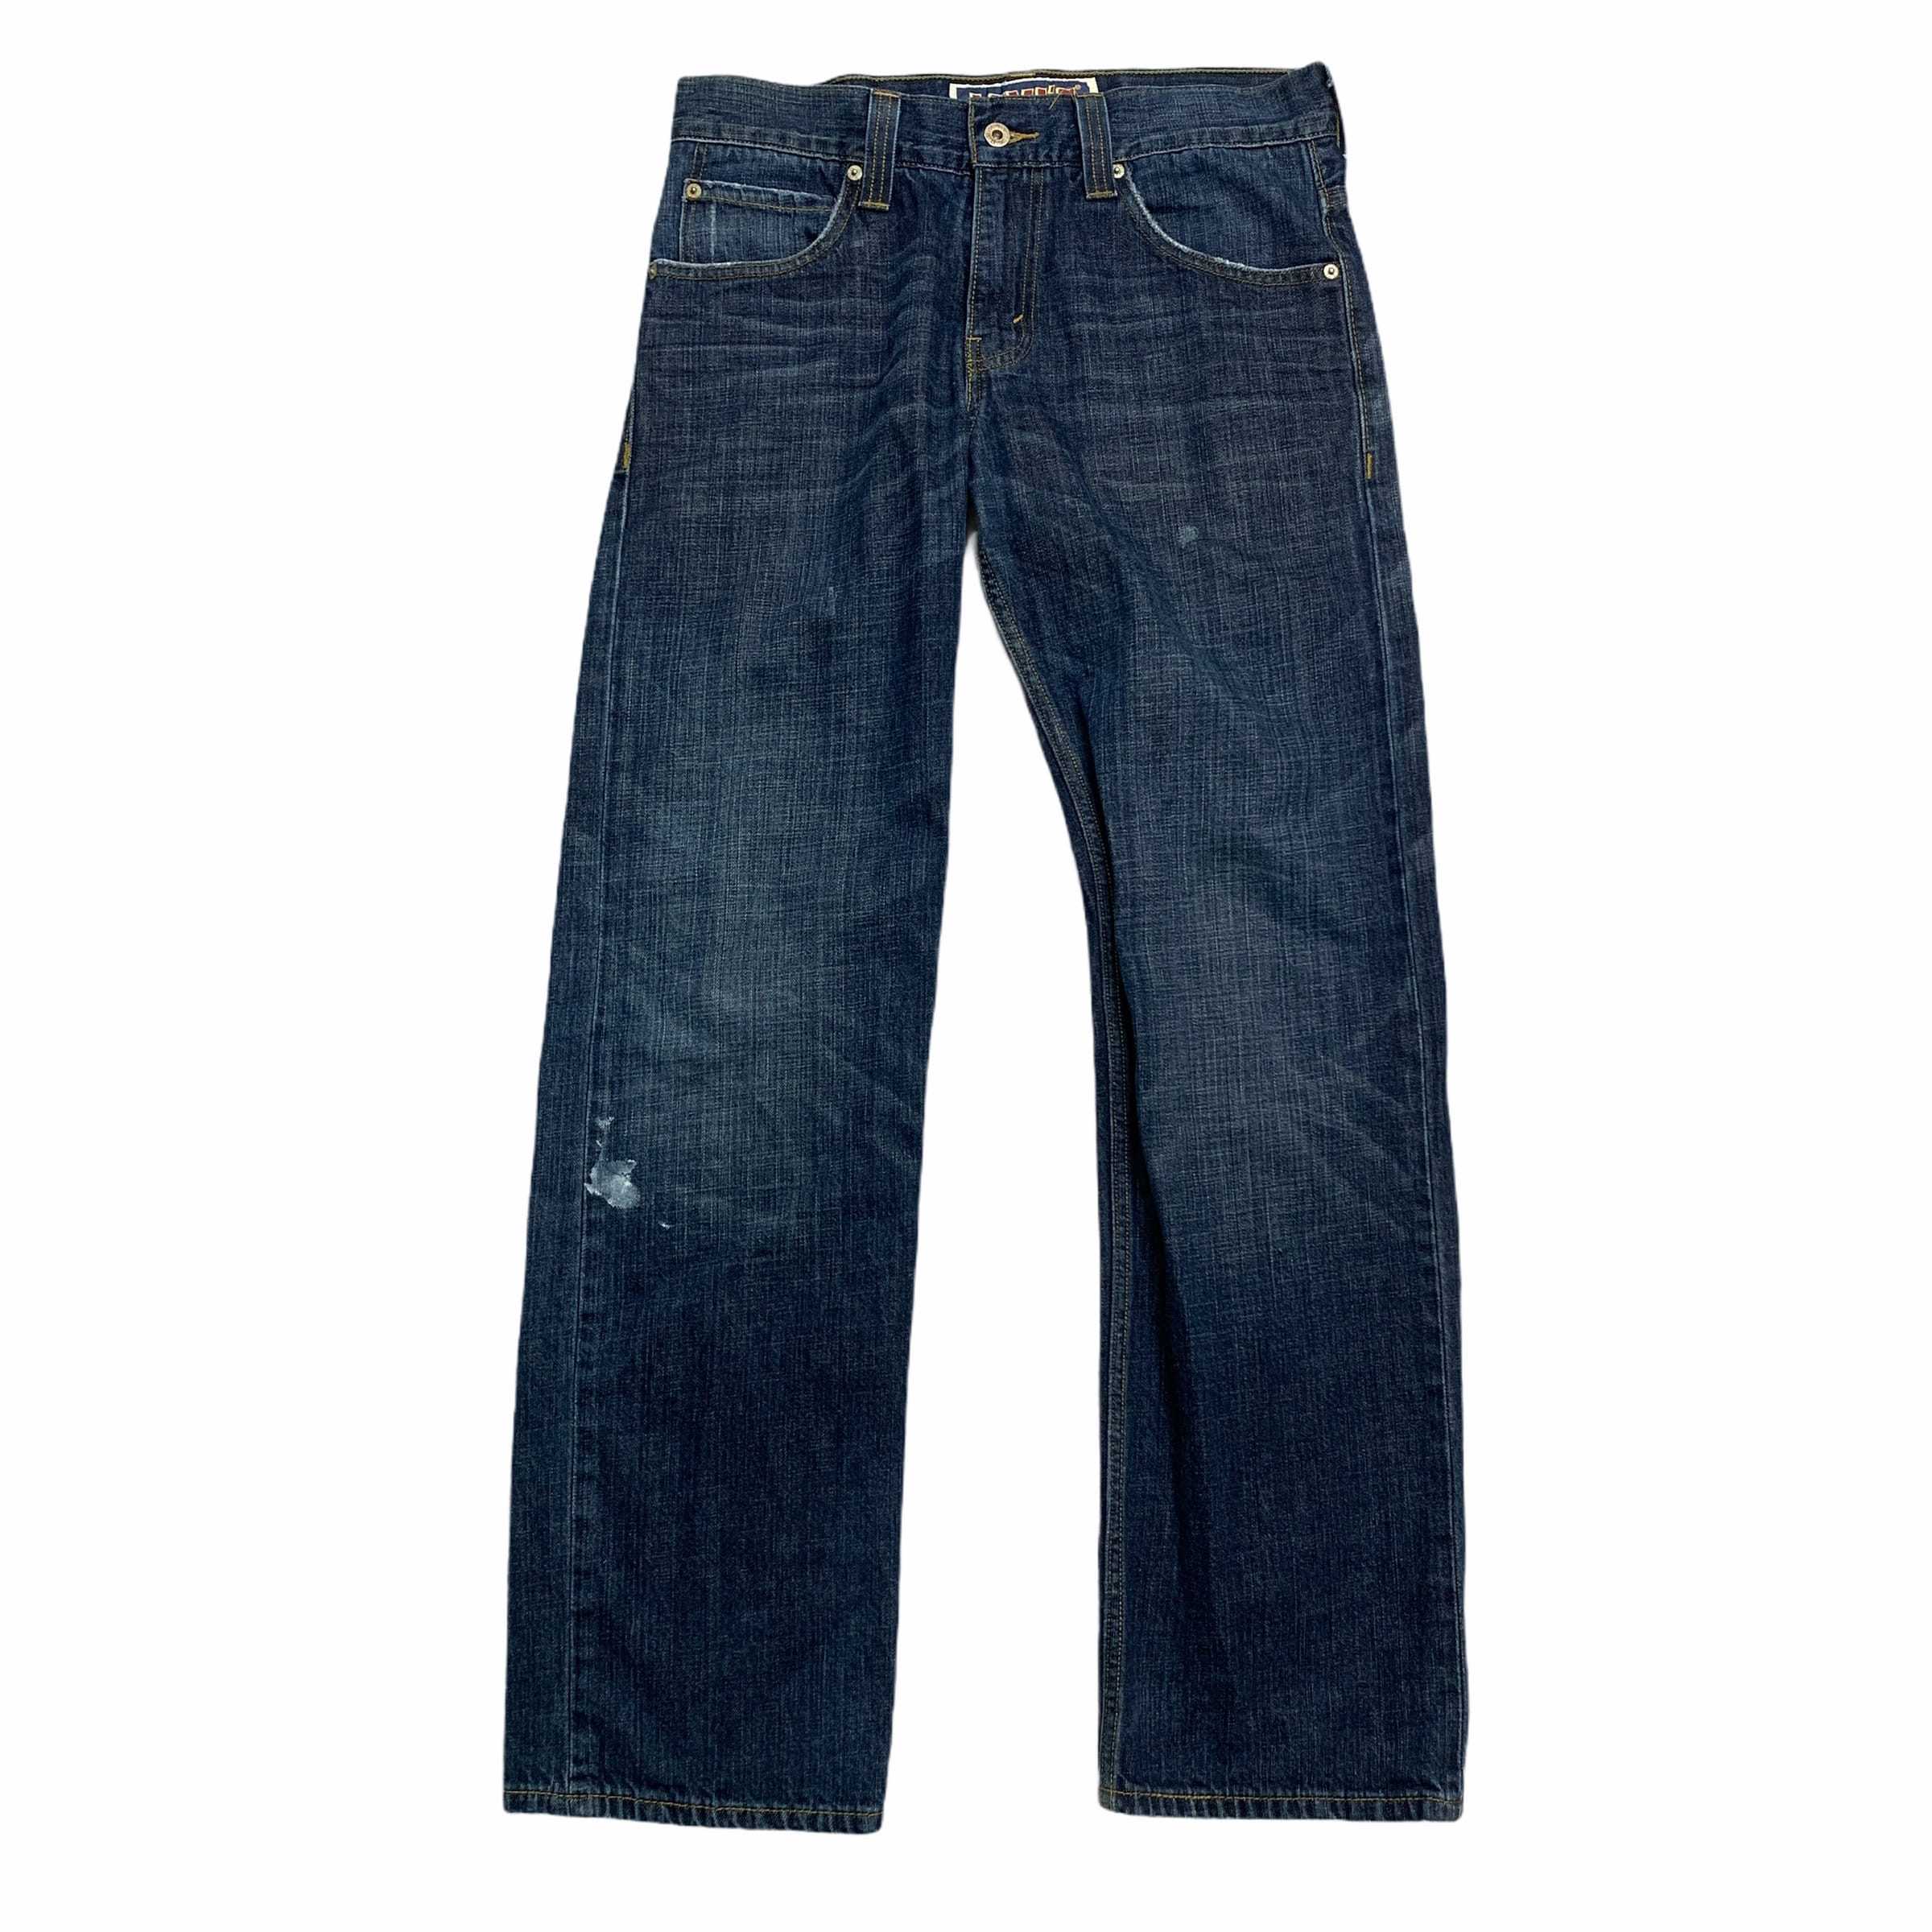 [Levis] (Vintage) 549 Original Denim pants - Size 31/32